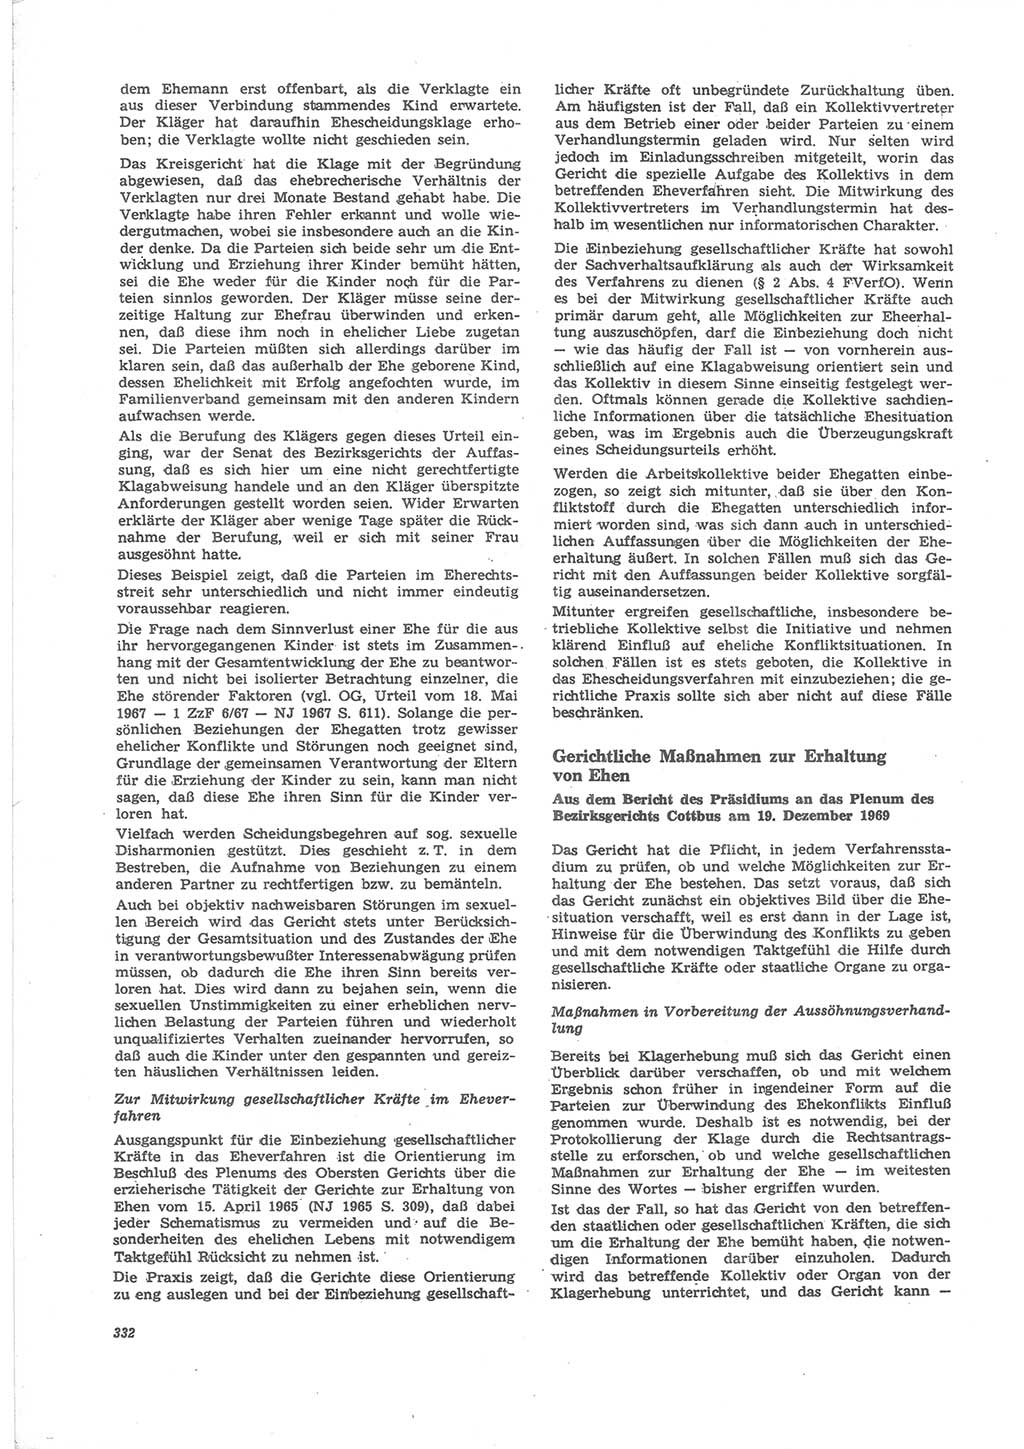 Neue Justiz (NJ), Zeitschrift für Recht und Rechtswissenschaft [Deutsche Demokratische Republik (DDR)], 24. Jahrgang 1970, Seite 332 (NJ DDR 1970, S. 332)